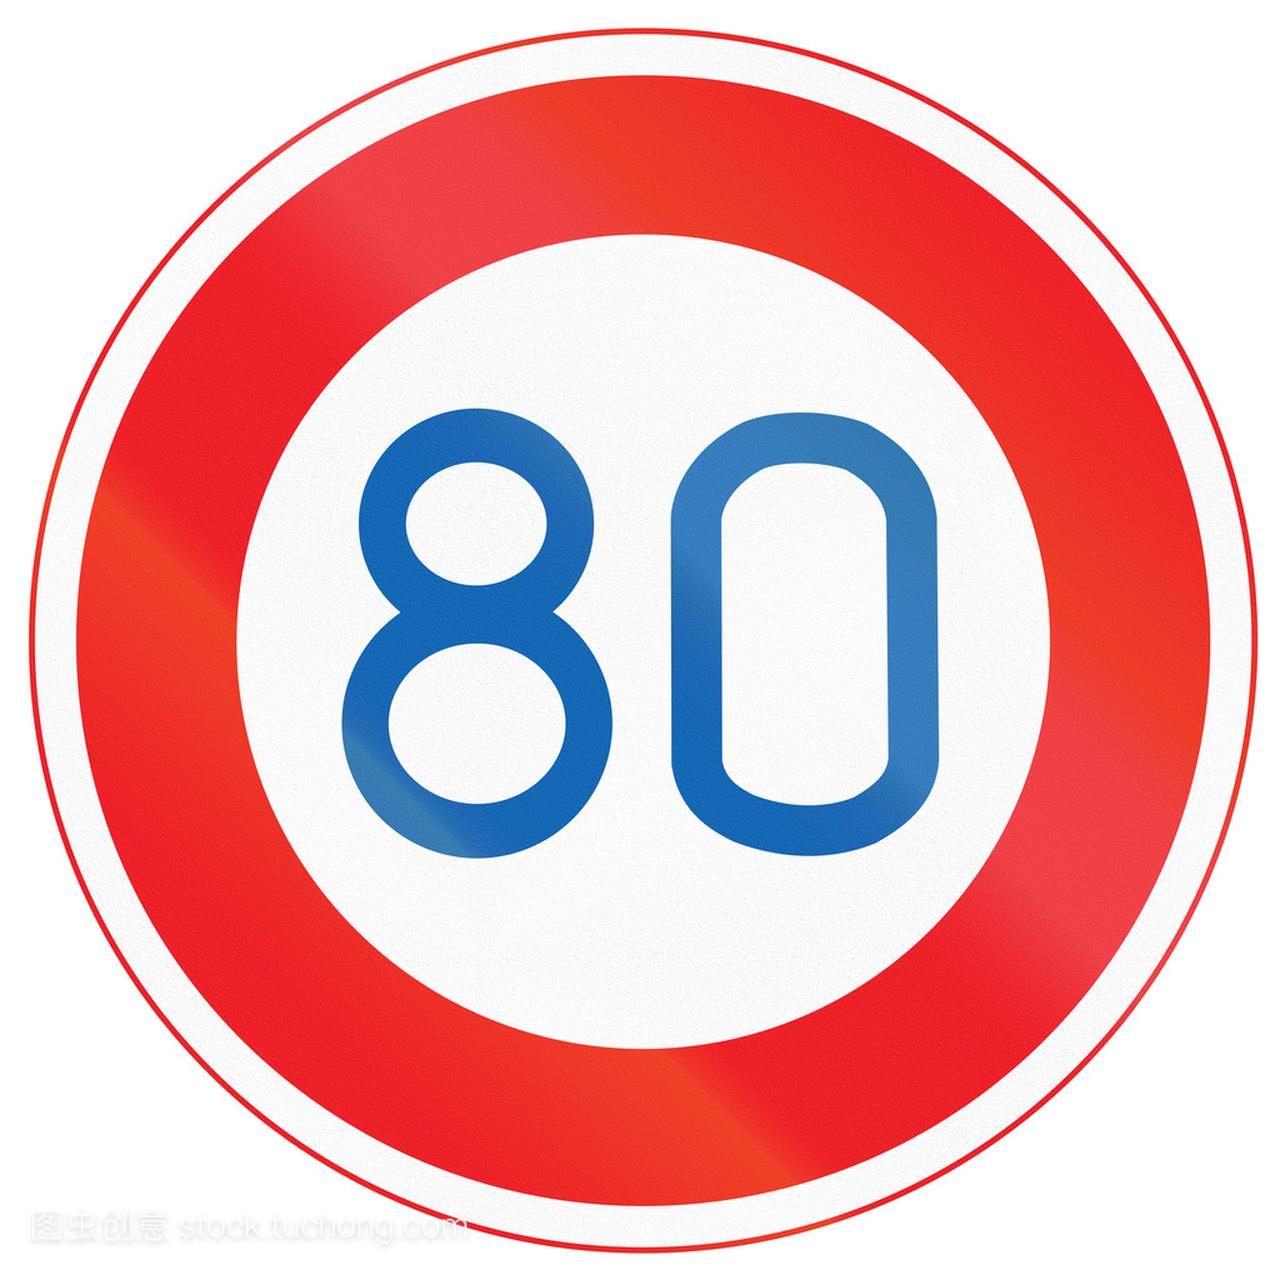 日本道路标志-最大限速 80 公里\/每小时